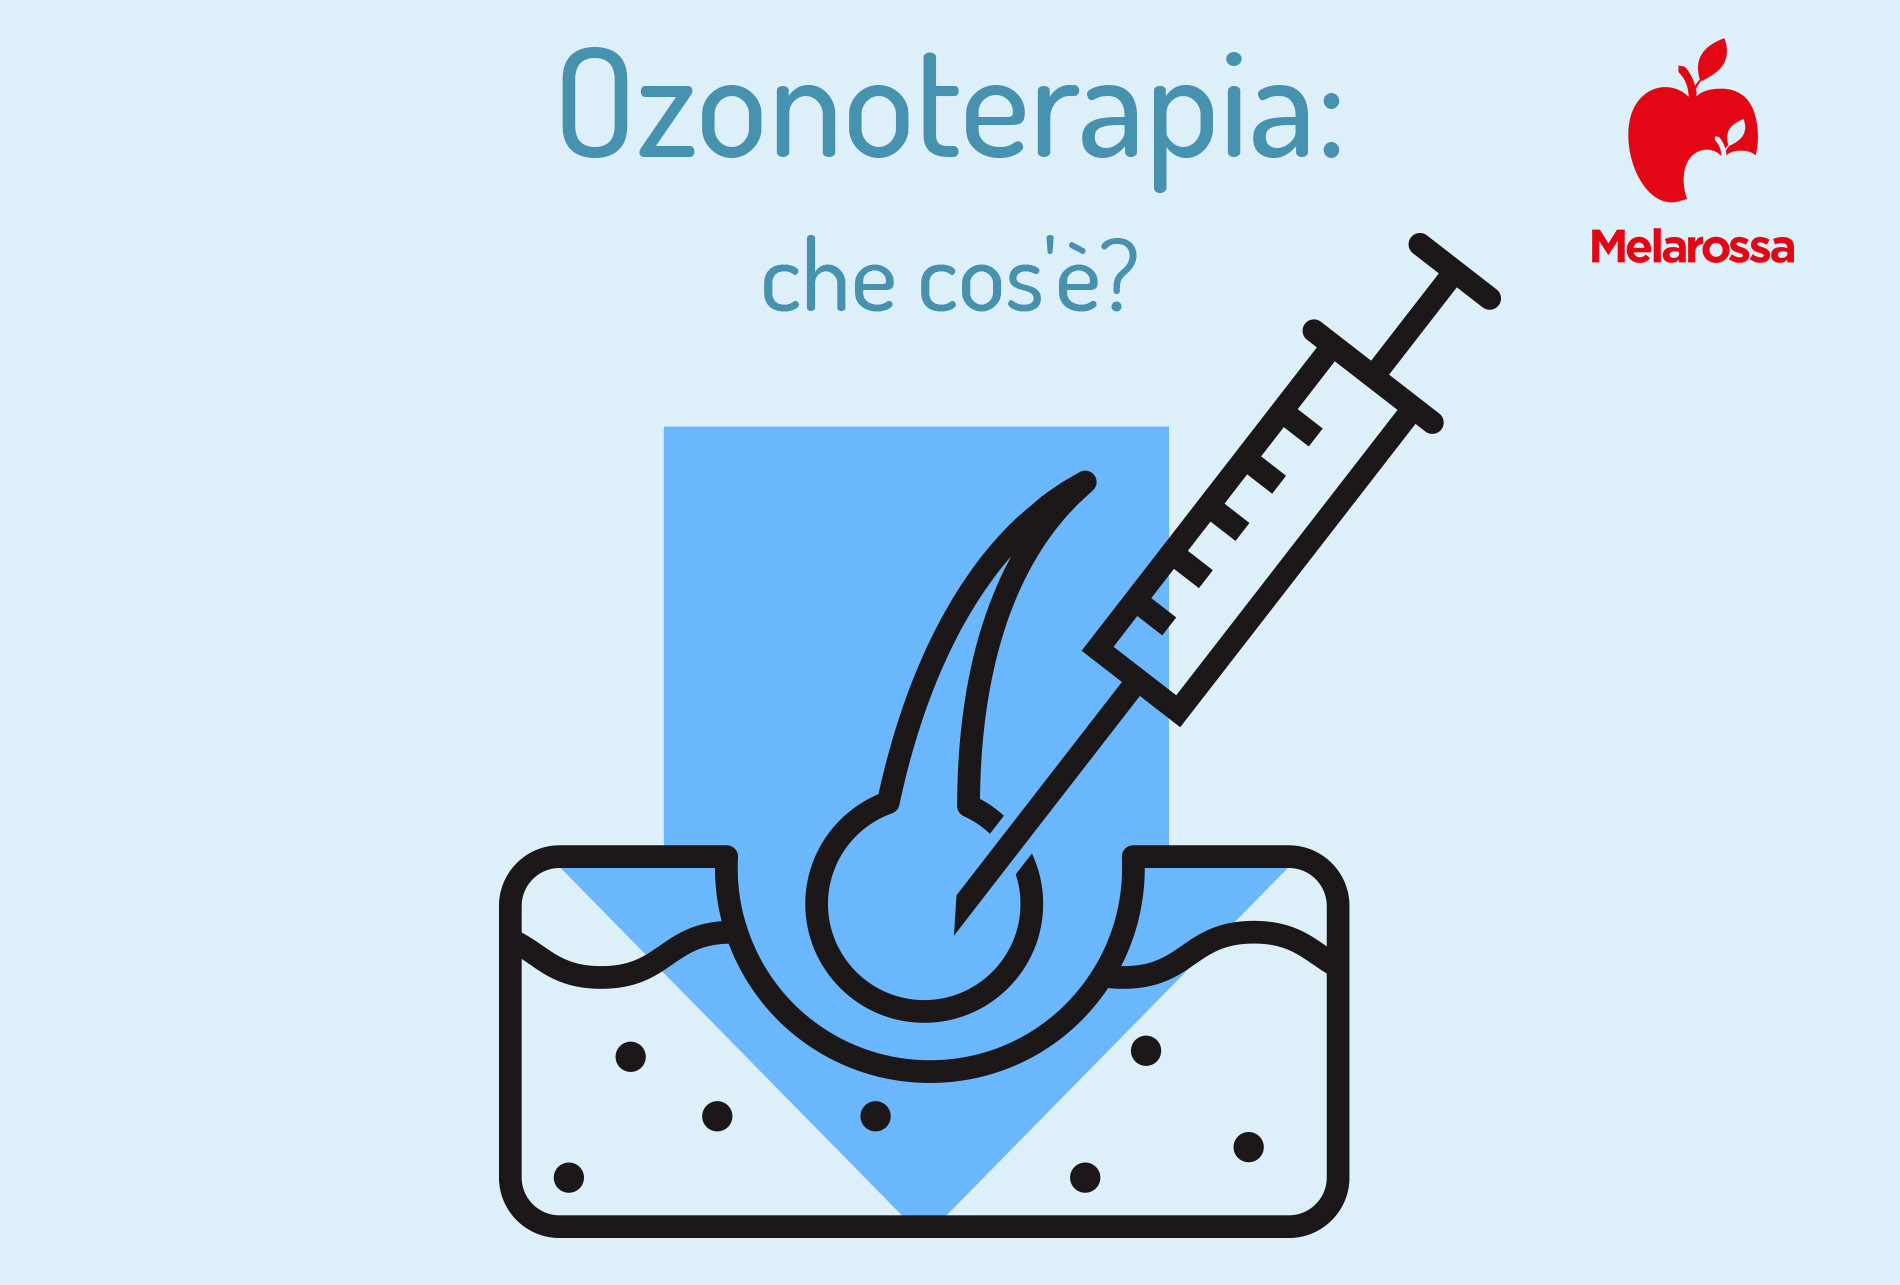 ozonoterapia: che cos'è